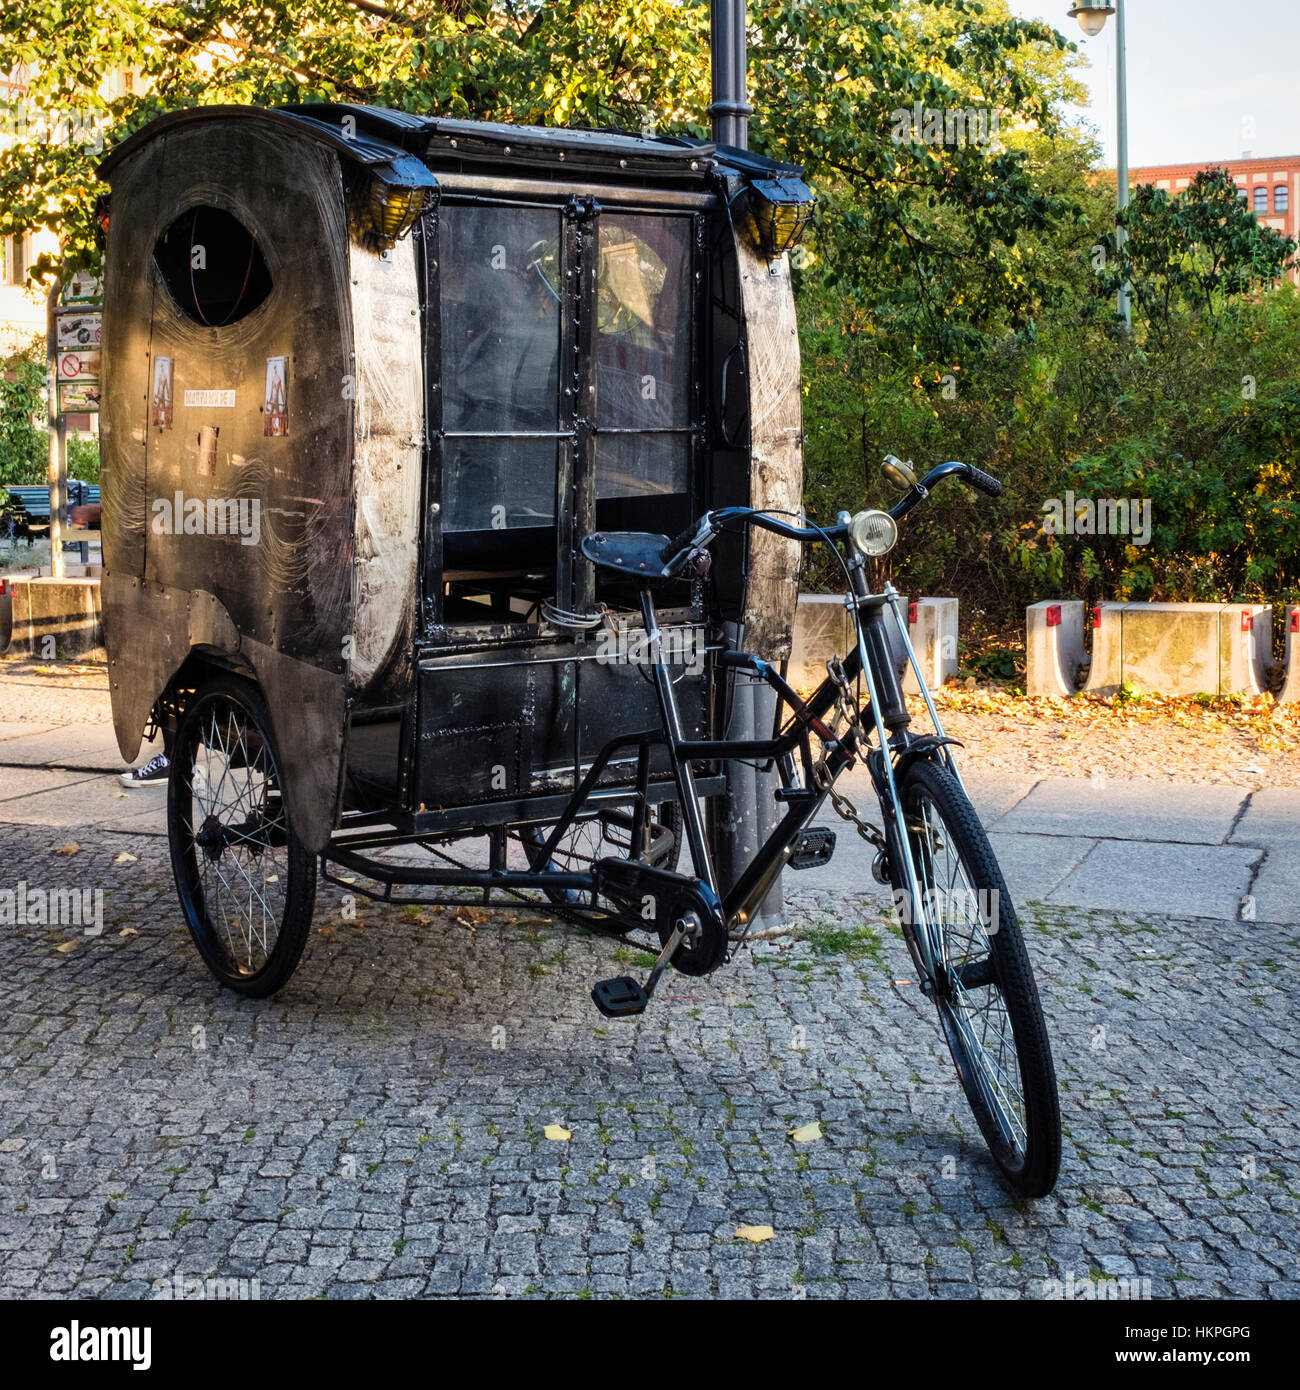 Drei Rädern Dreirad mit überdachten Wagen Typ Fach, Passagiere zu befördern  Stockfotografie - Alamy